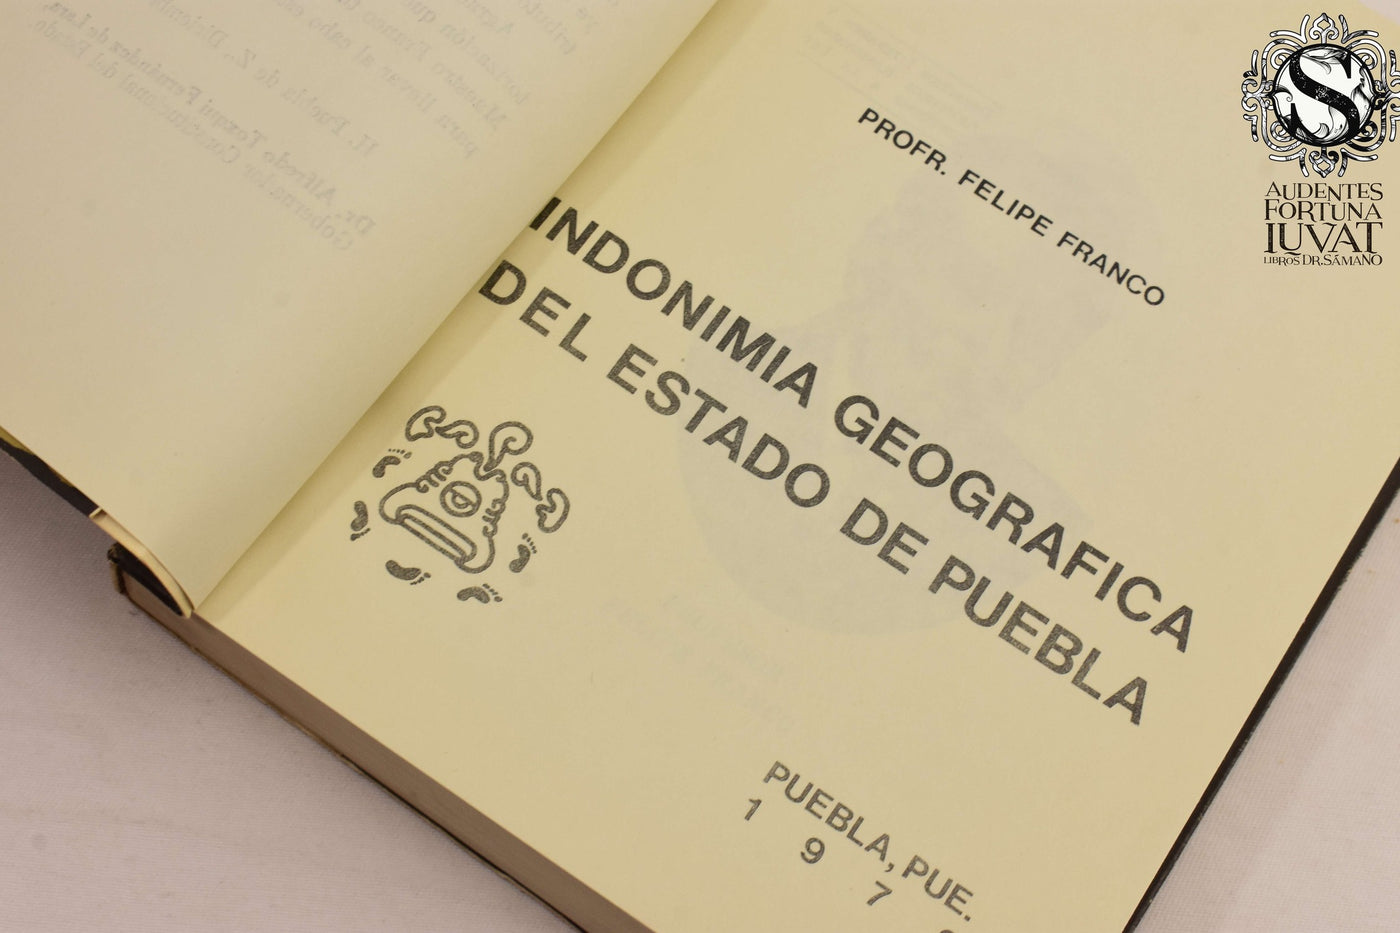 Indonimia Geográfica del Estado de Puebla - FELIPE FRANCO